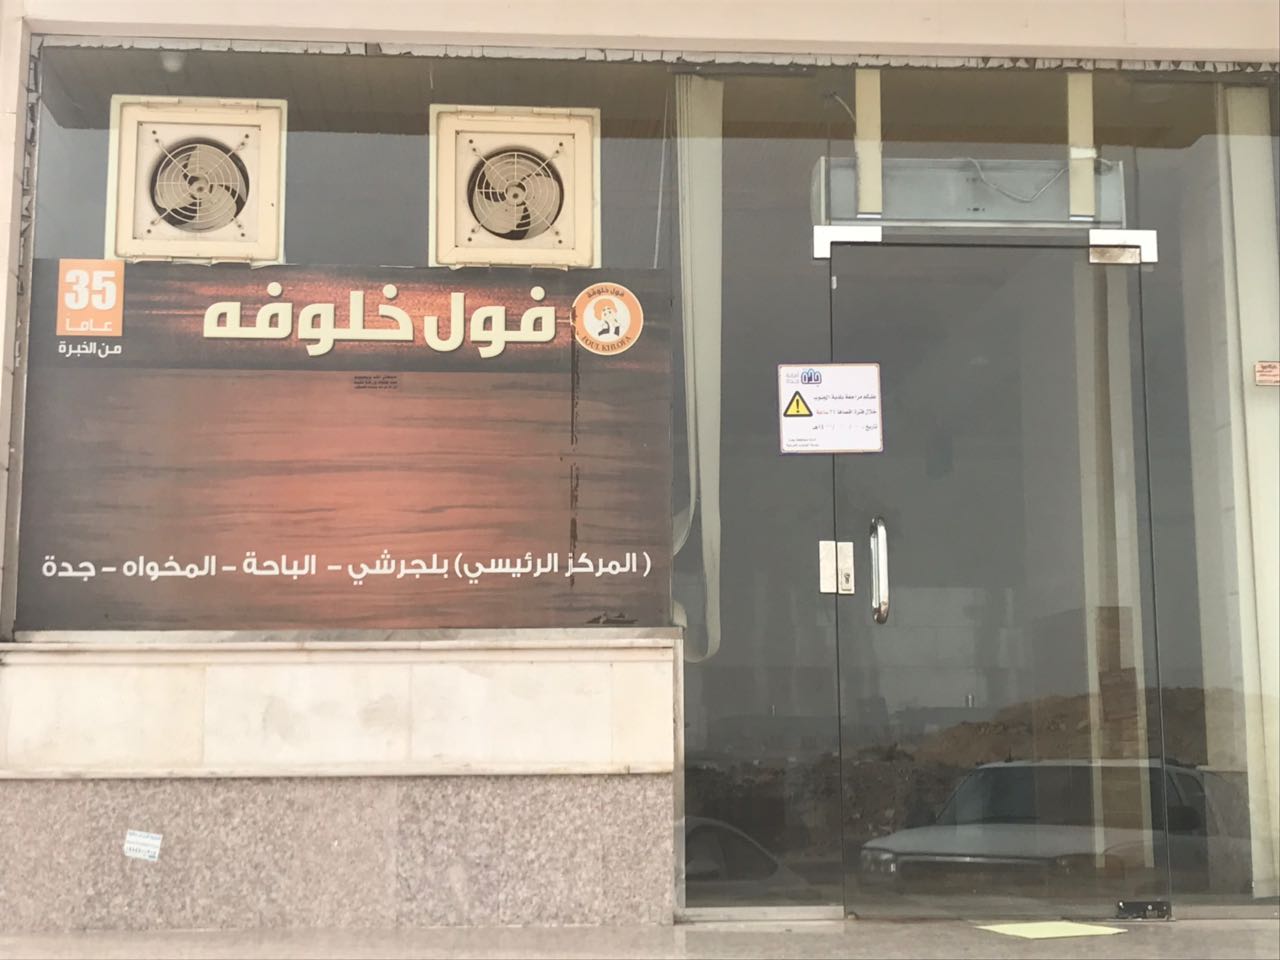 تفاعلًا مع بلاغات “المواطن”.. إغلاق مطعم شهير في جدة